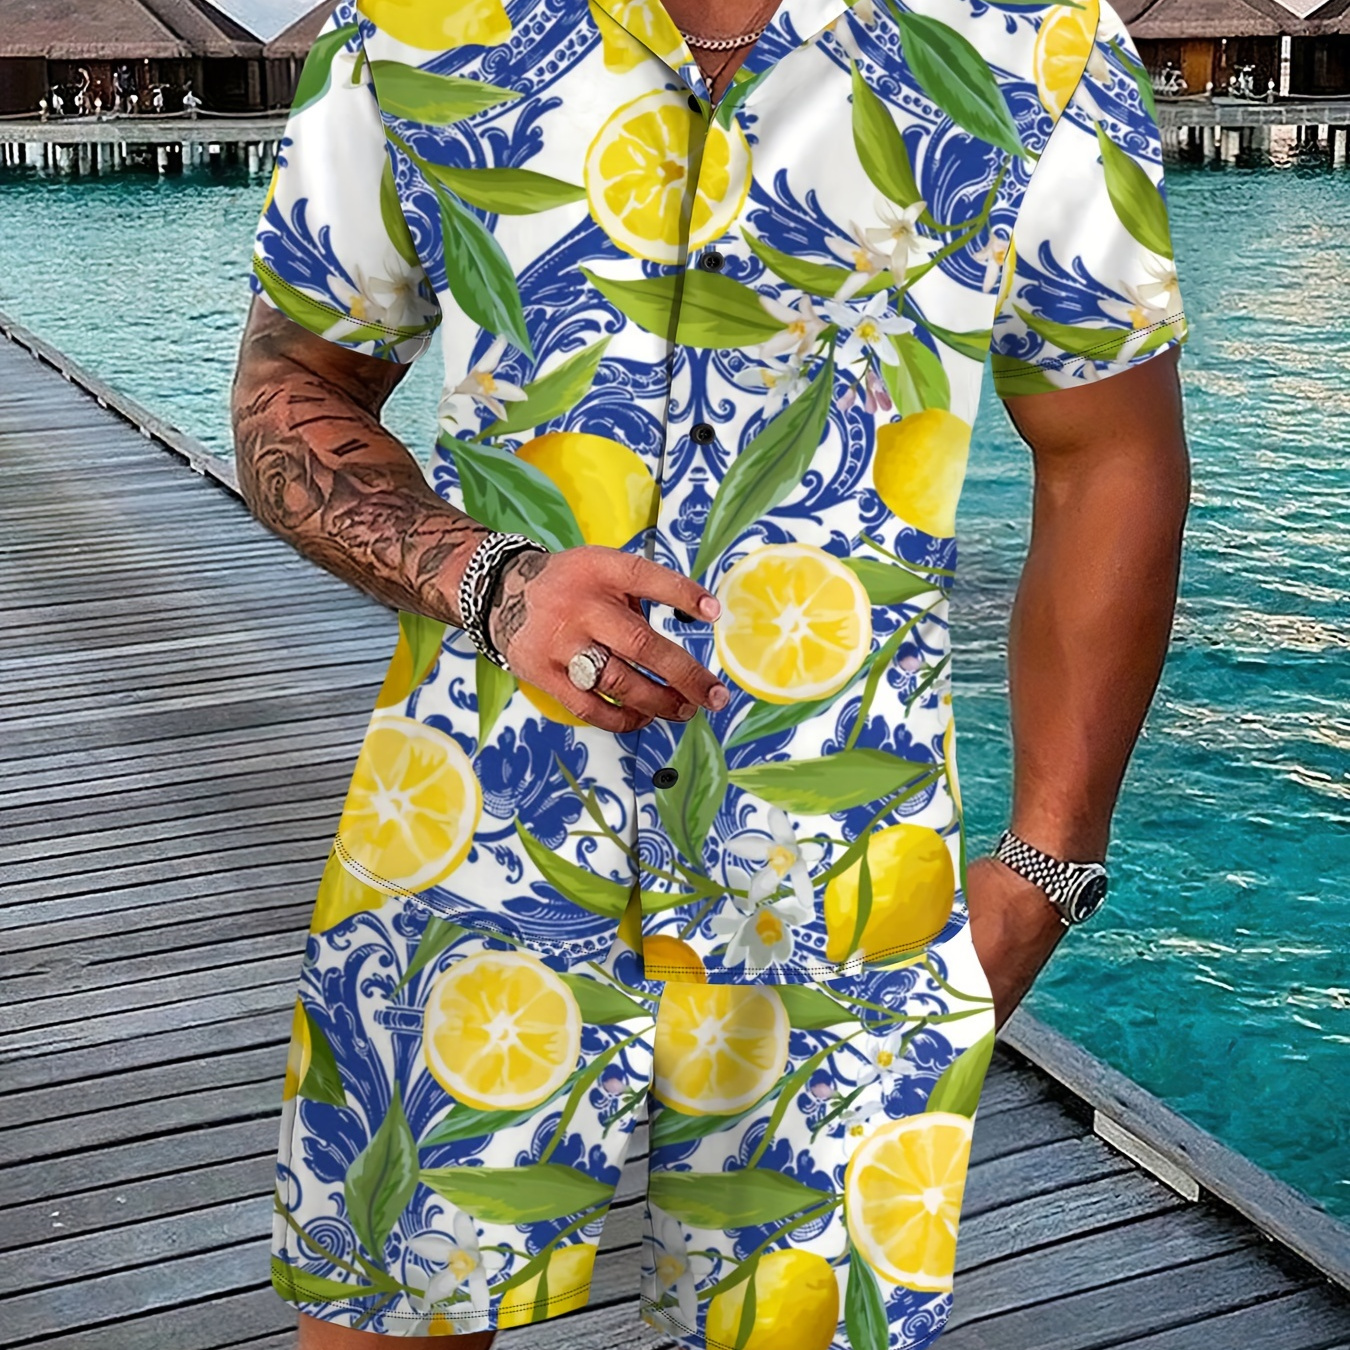 

Men's Lemon Graphic Print Shirt & Shorts Set For Summer, 2pcs Outfits